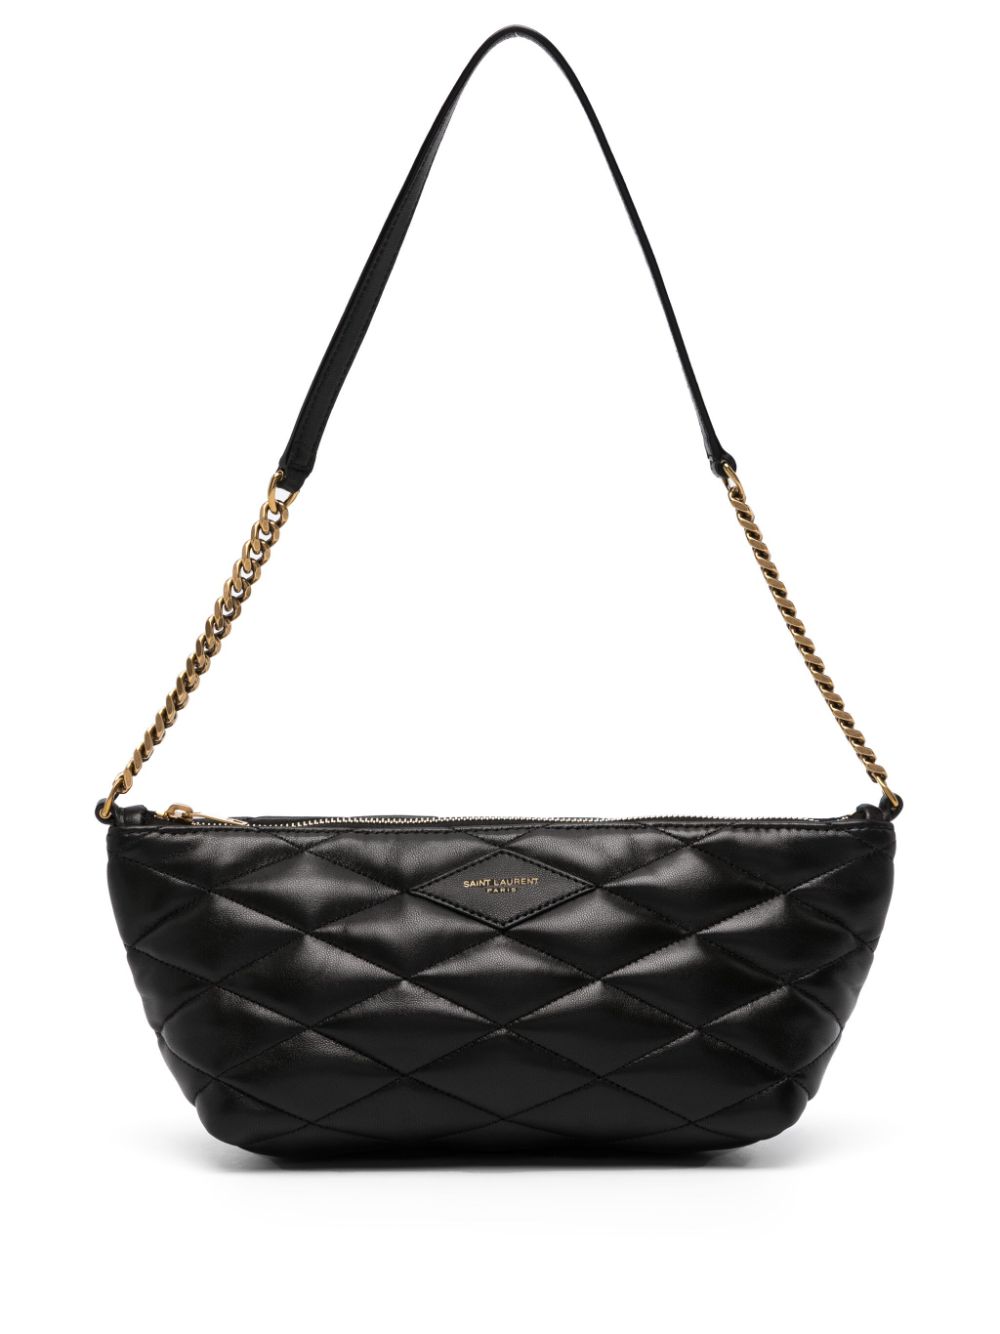 Saint Laurent Quilted Leather Shoulder Bag - Black - One Size